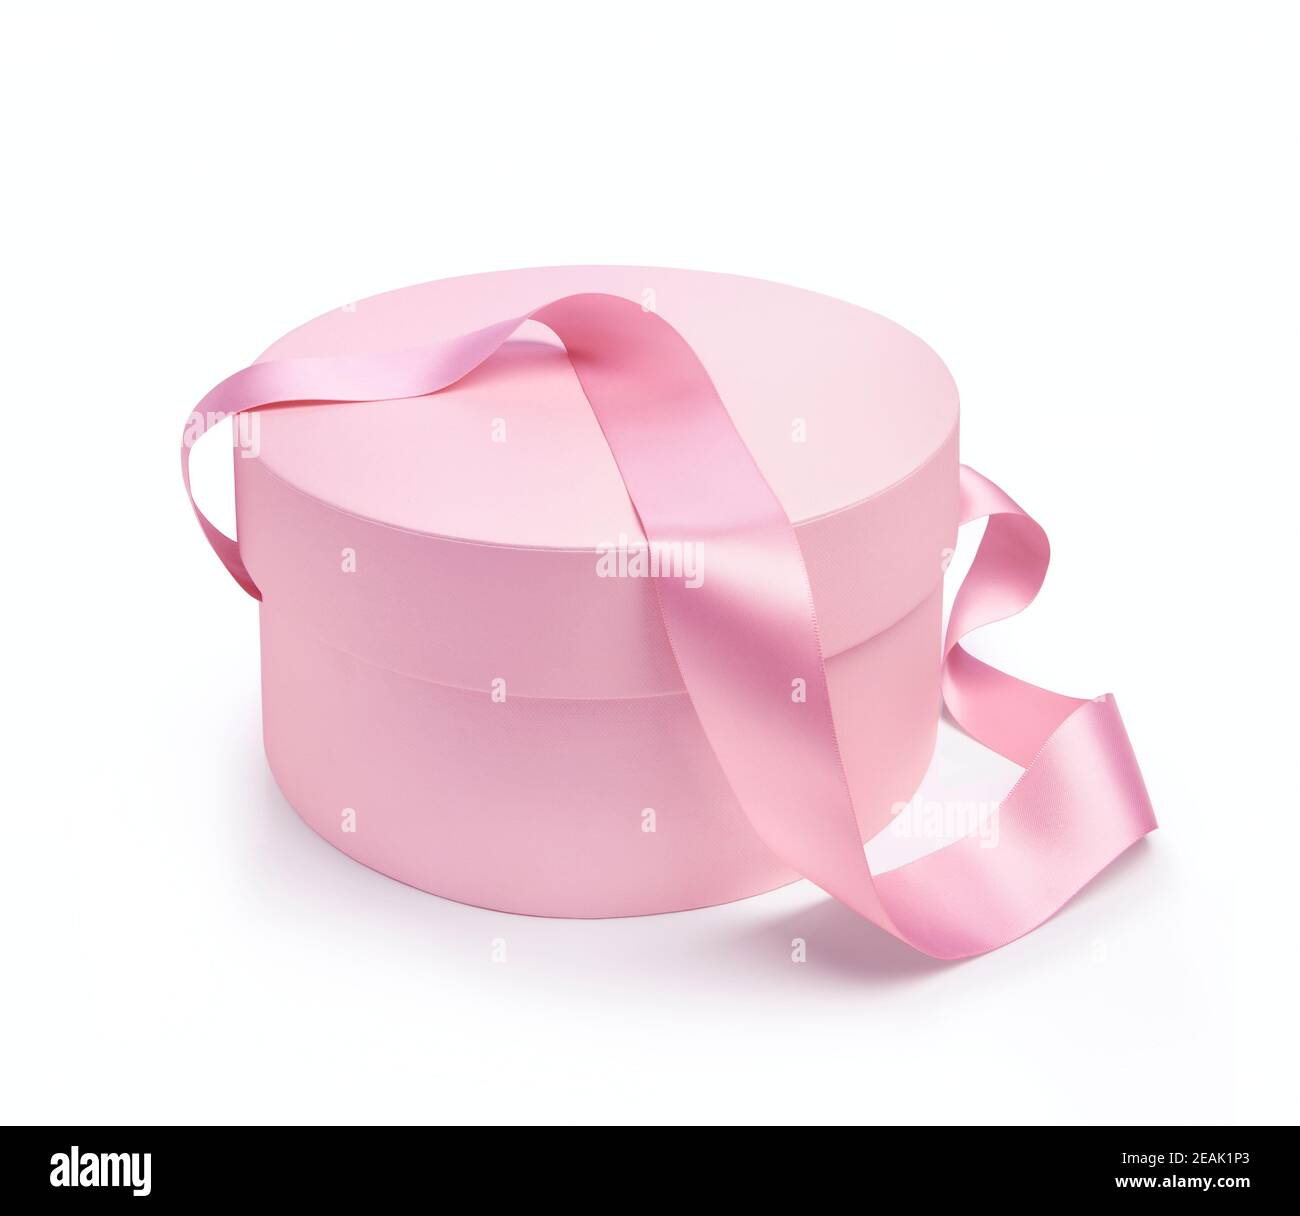 Boîte cadeau de forme ronde de couleur rose sur fond blanc Banque D'Images